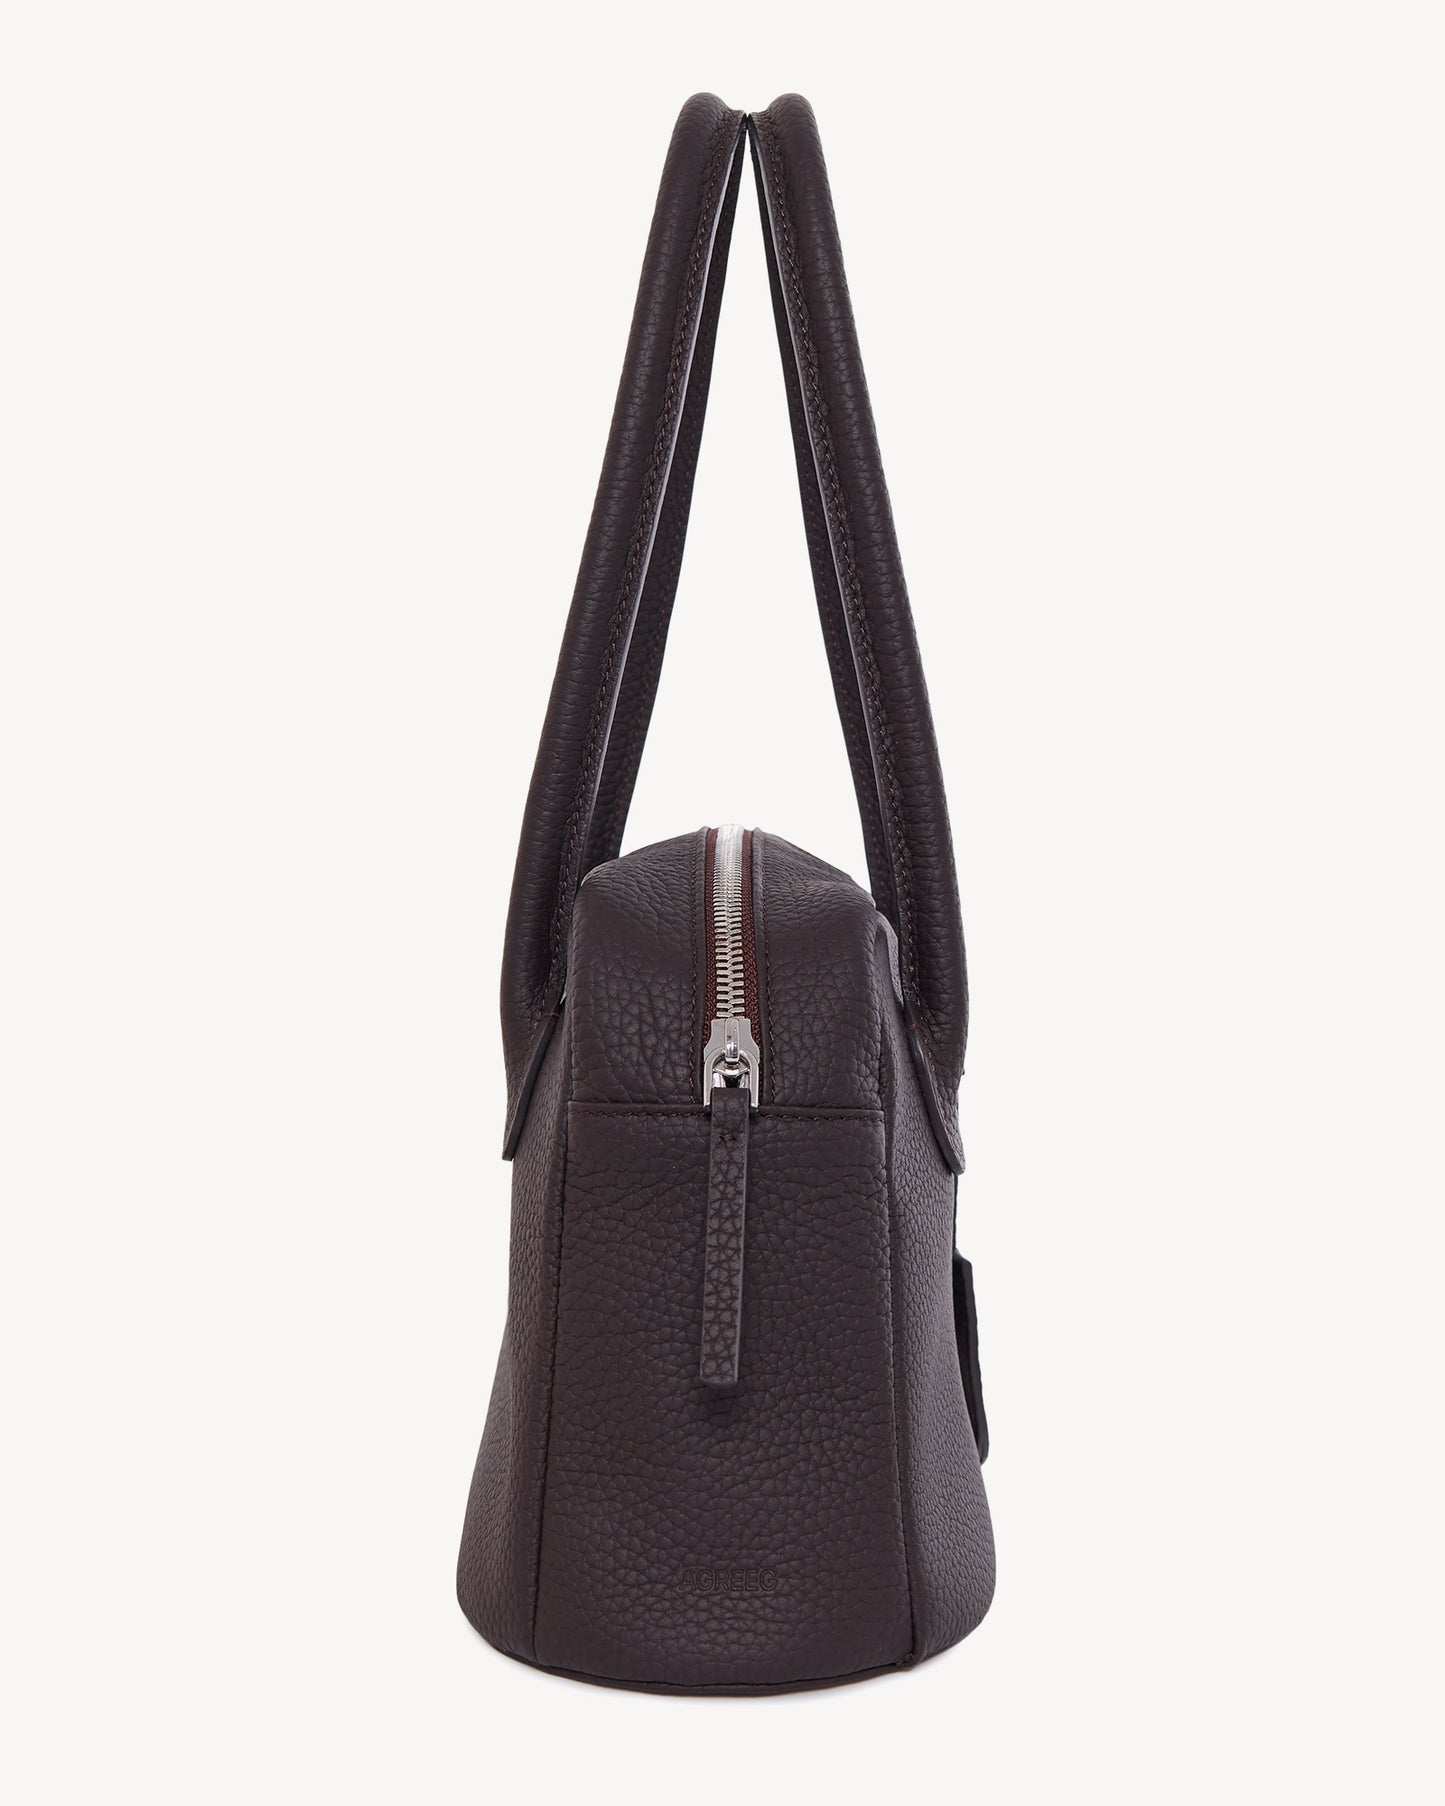 Teona mini leather bag